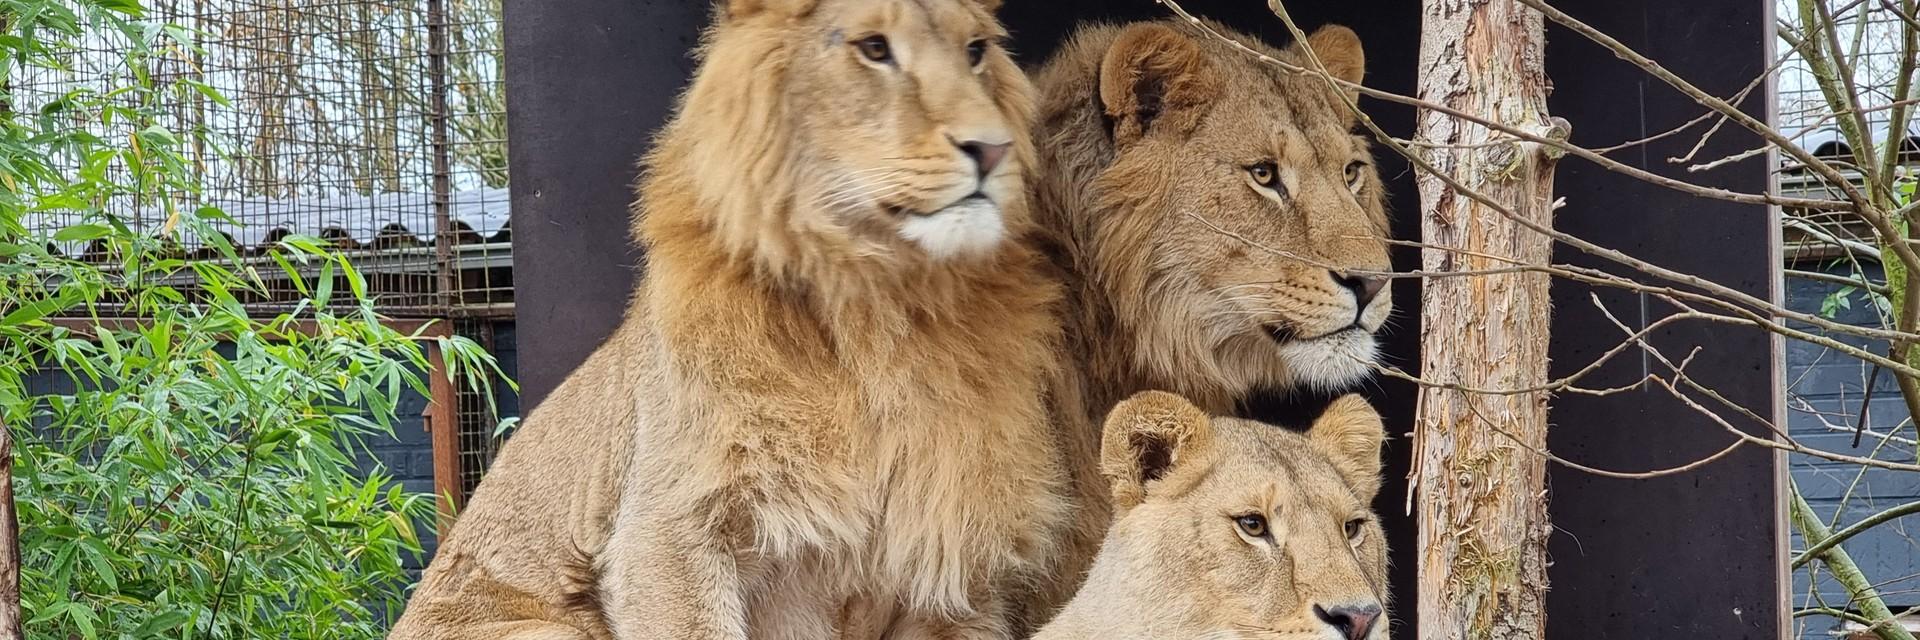 Lions Dolf, Roman & Ellie